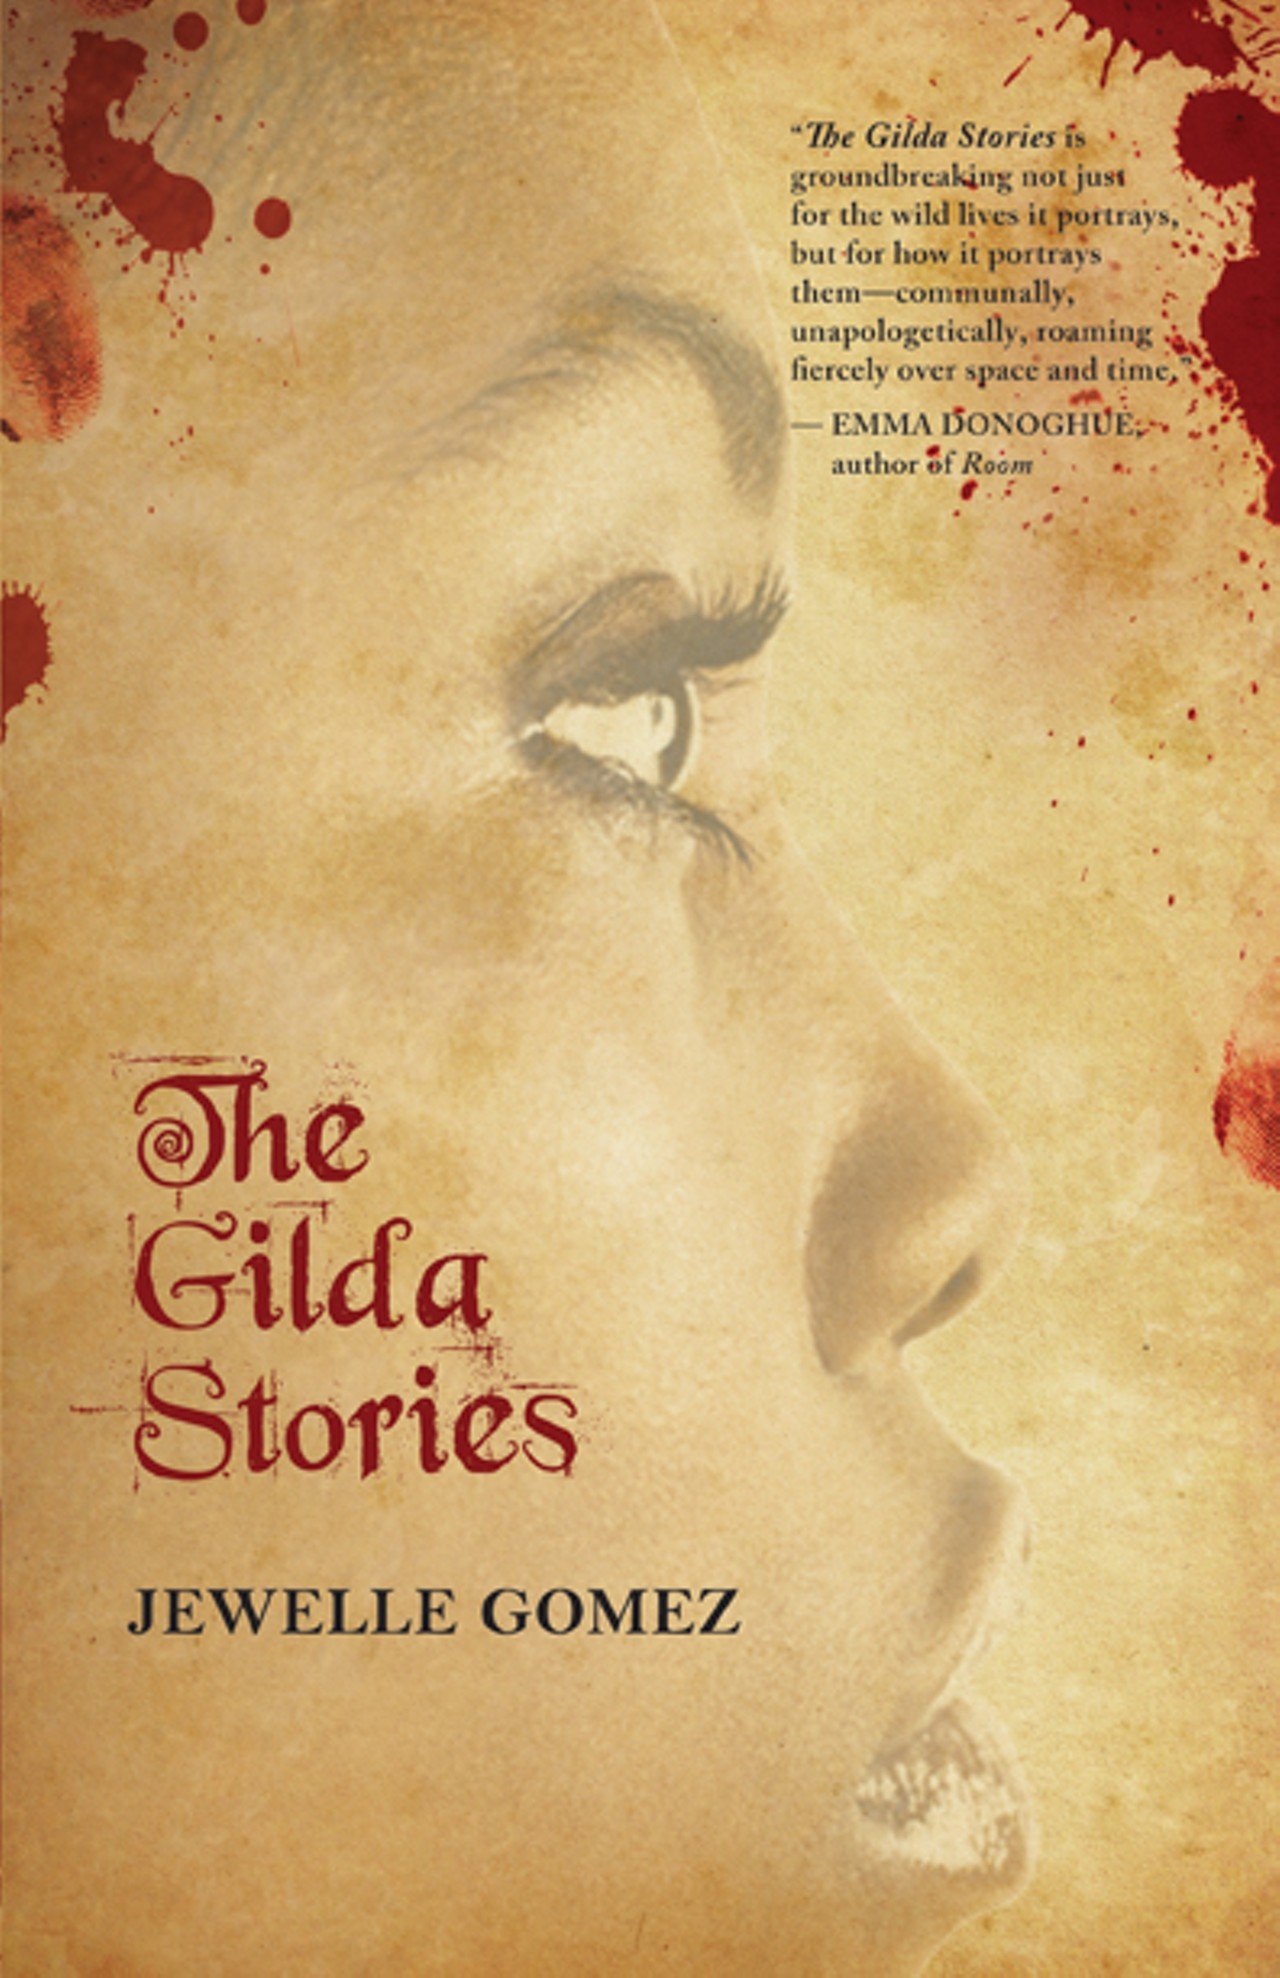 Jewelle Gomez, The Gilda Stories, 1991